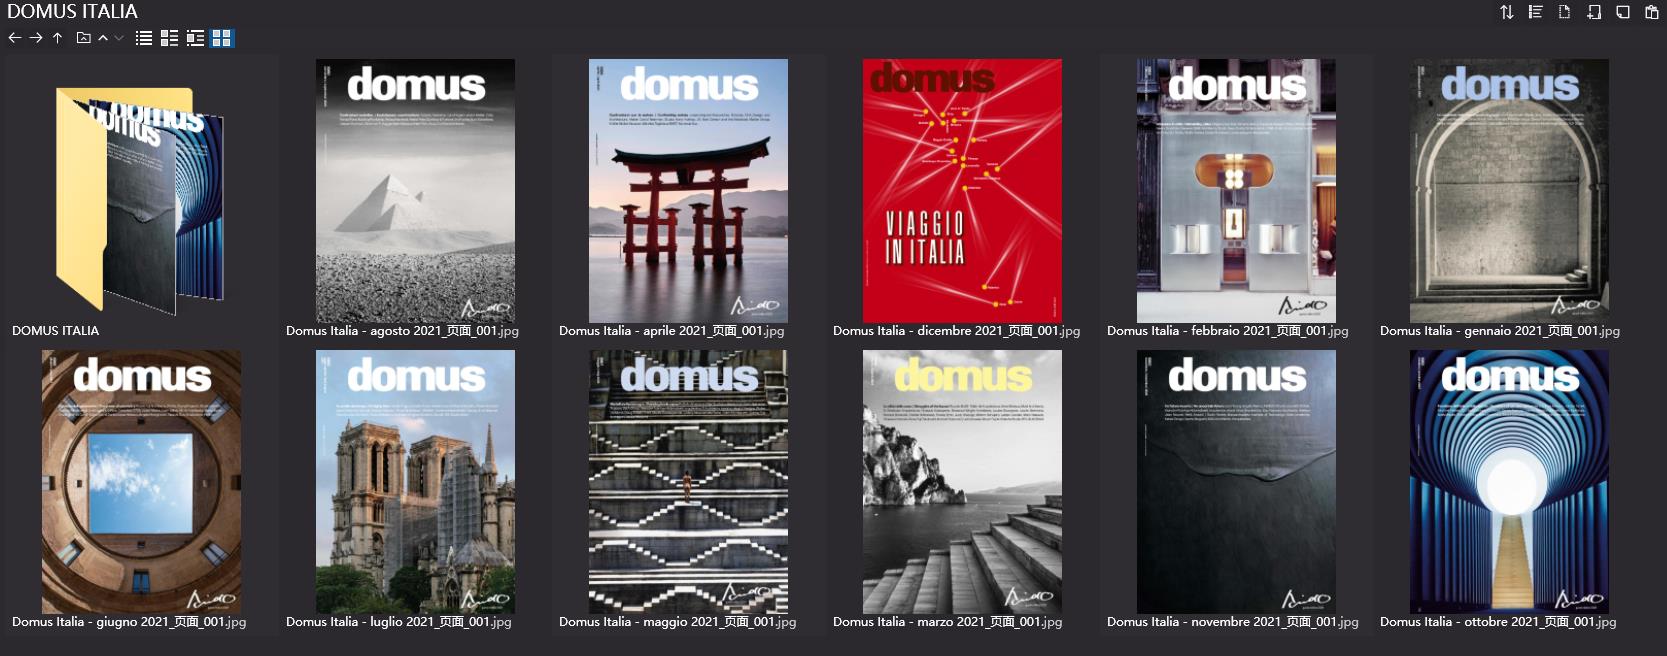 建筑杂志DOMUS ITALIA,建筑、设计杂志DOMUS ITALIA,建筑设计杂志,DOMUS设计杂志,DOMUS设计电子杂志,杂志下载,DOMUS杂志合集